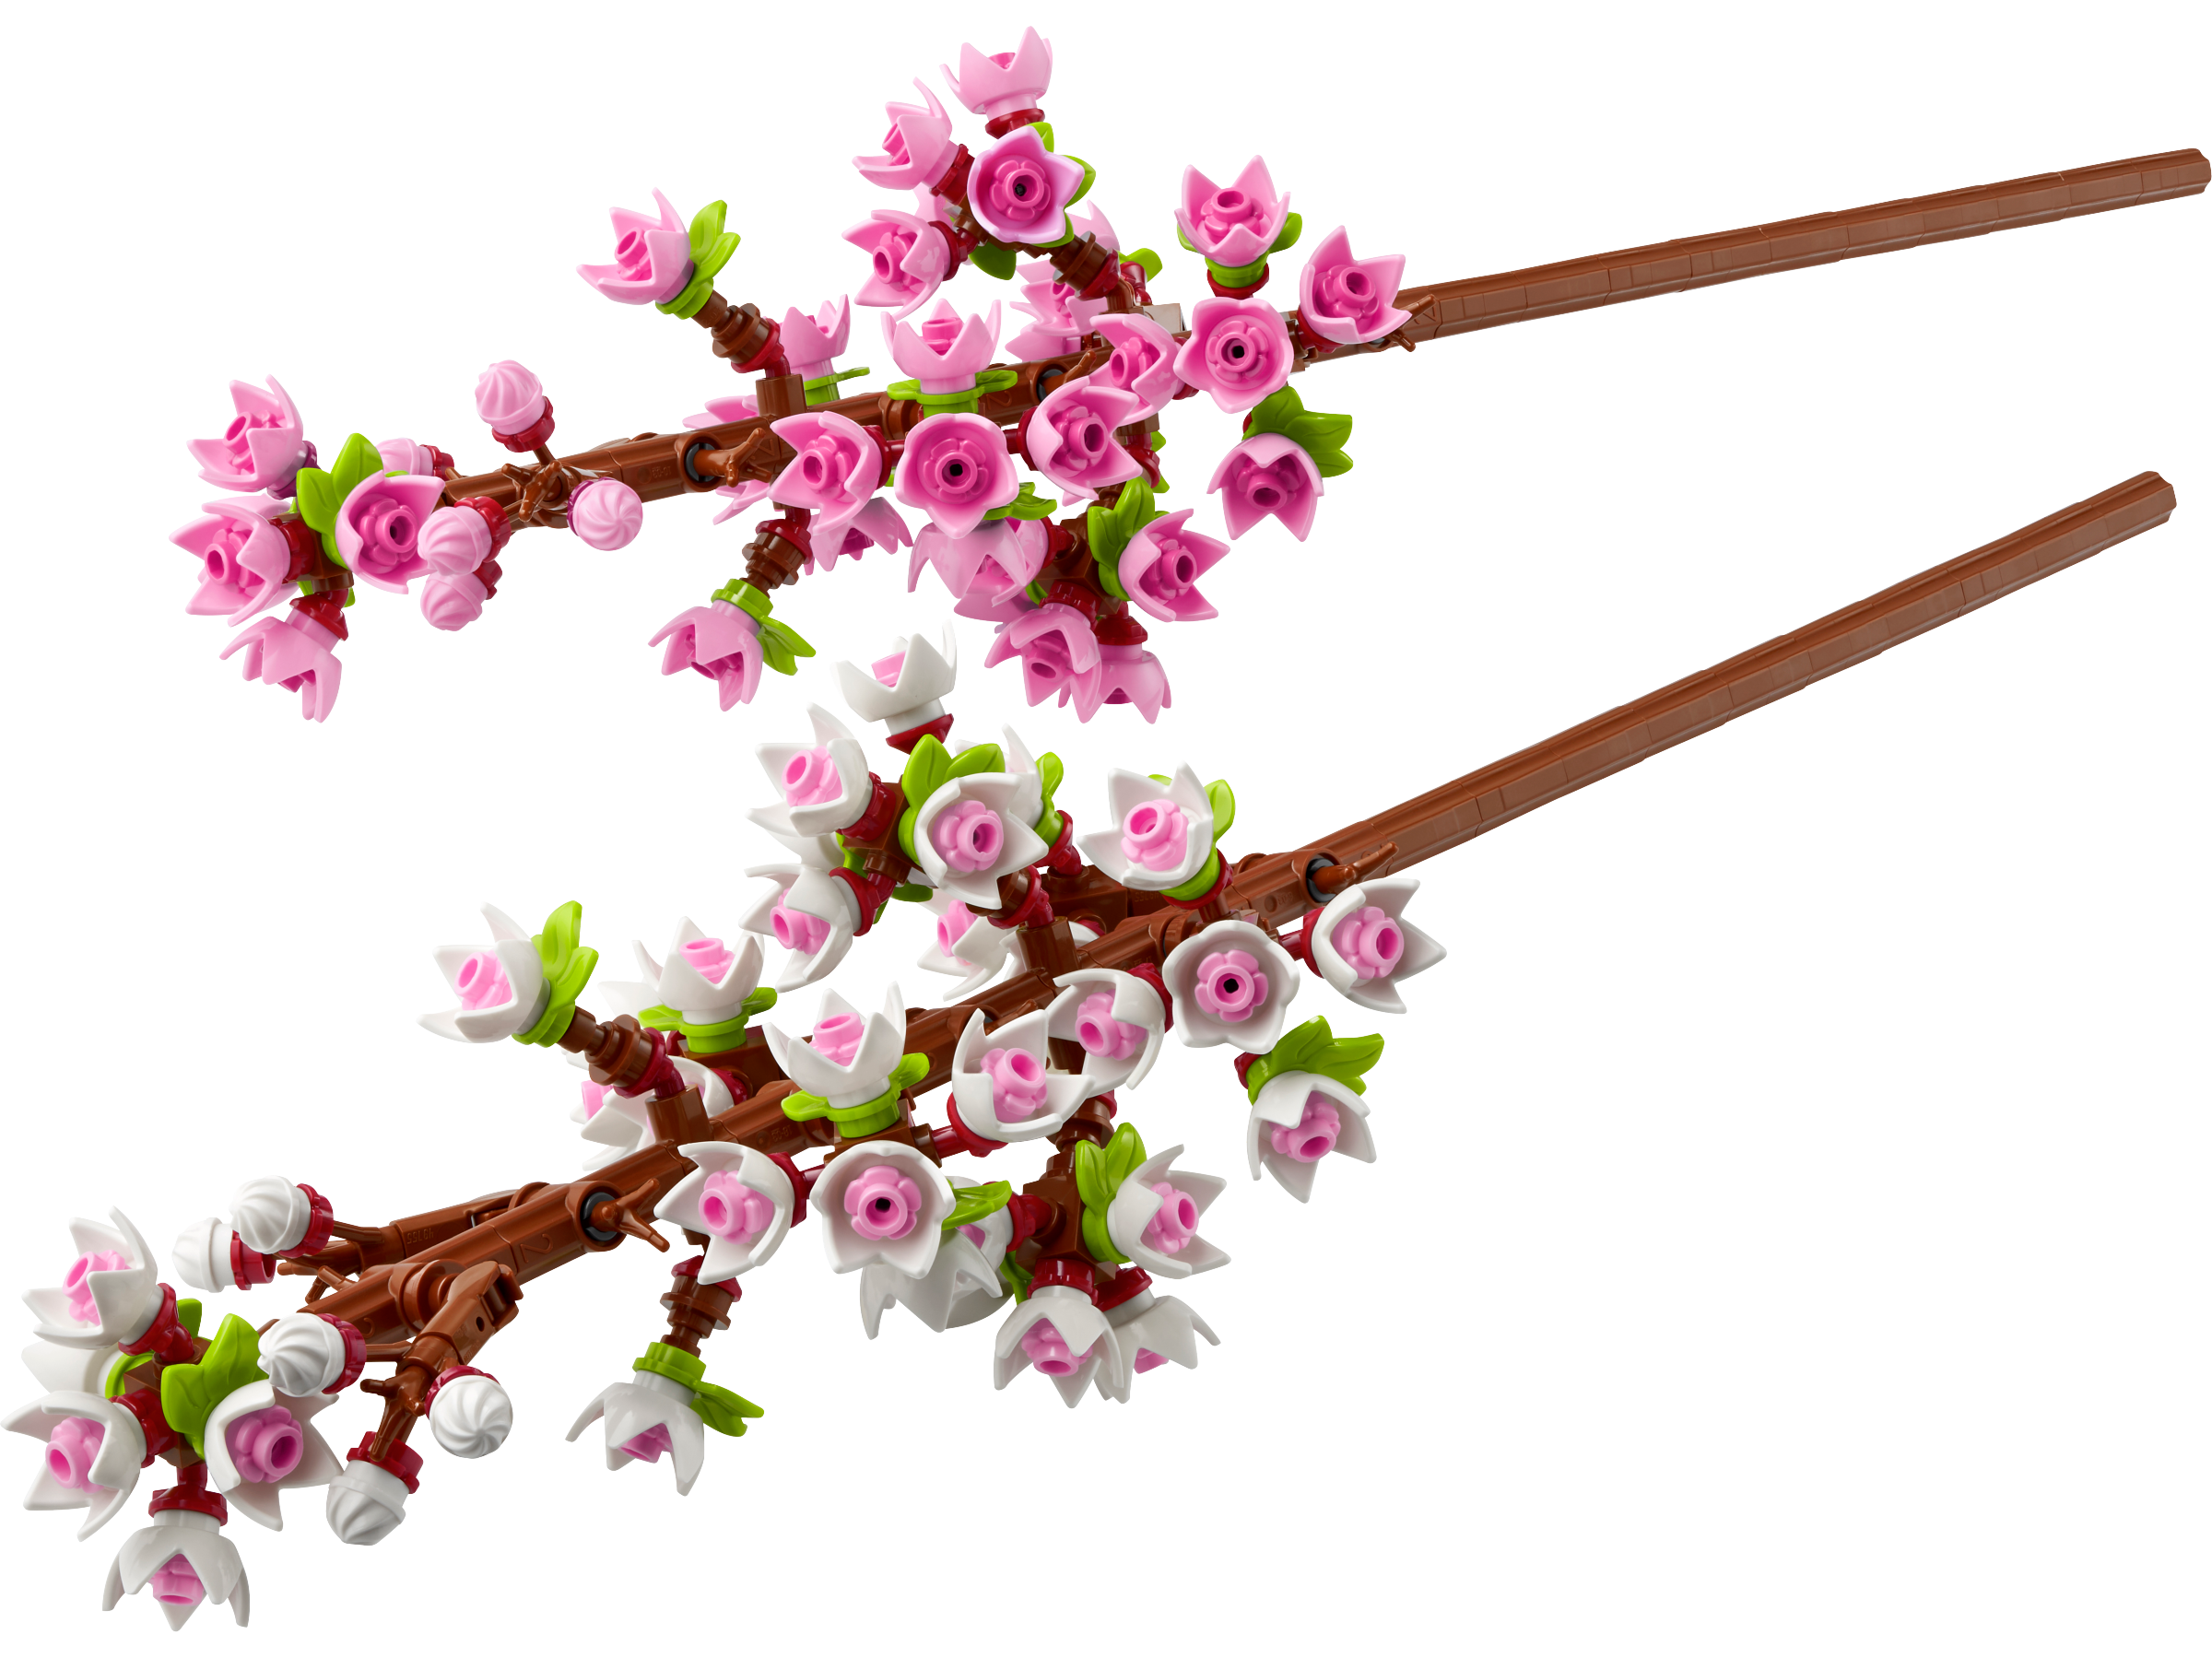 Les fleurs de cerisier 40725, The Botanical Collection